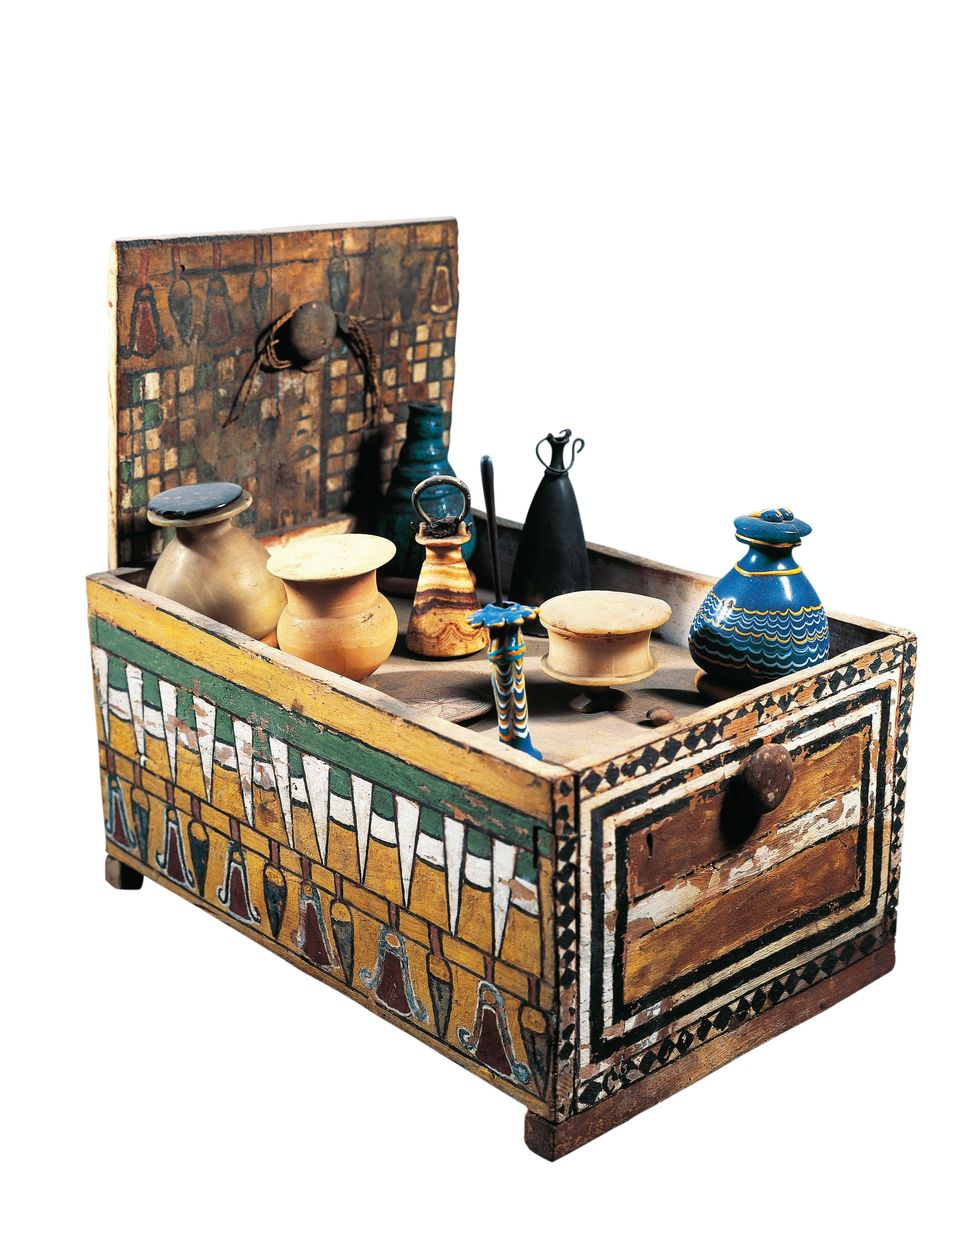 Dit goed bewaarde beschilderde kistje bevatte potjes cosmetica parfums en zalven die eigendom waren van Merit echtgenote van de architect Kha